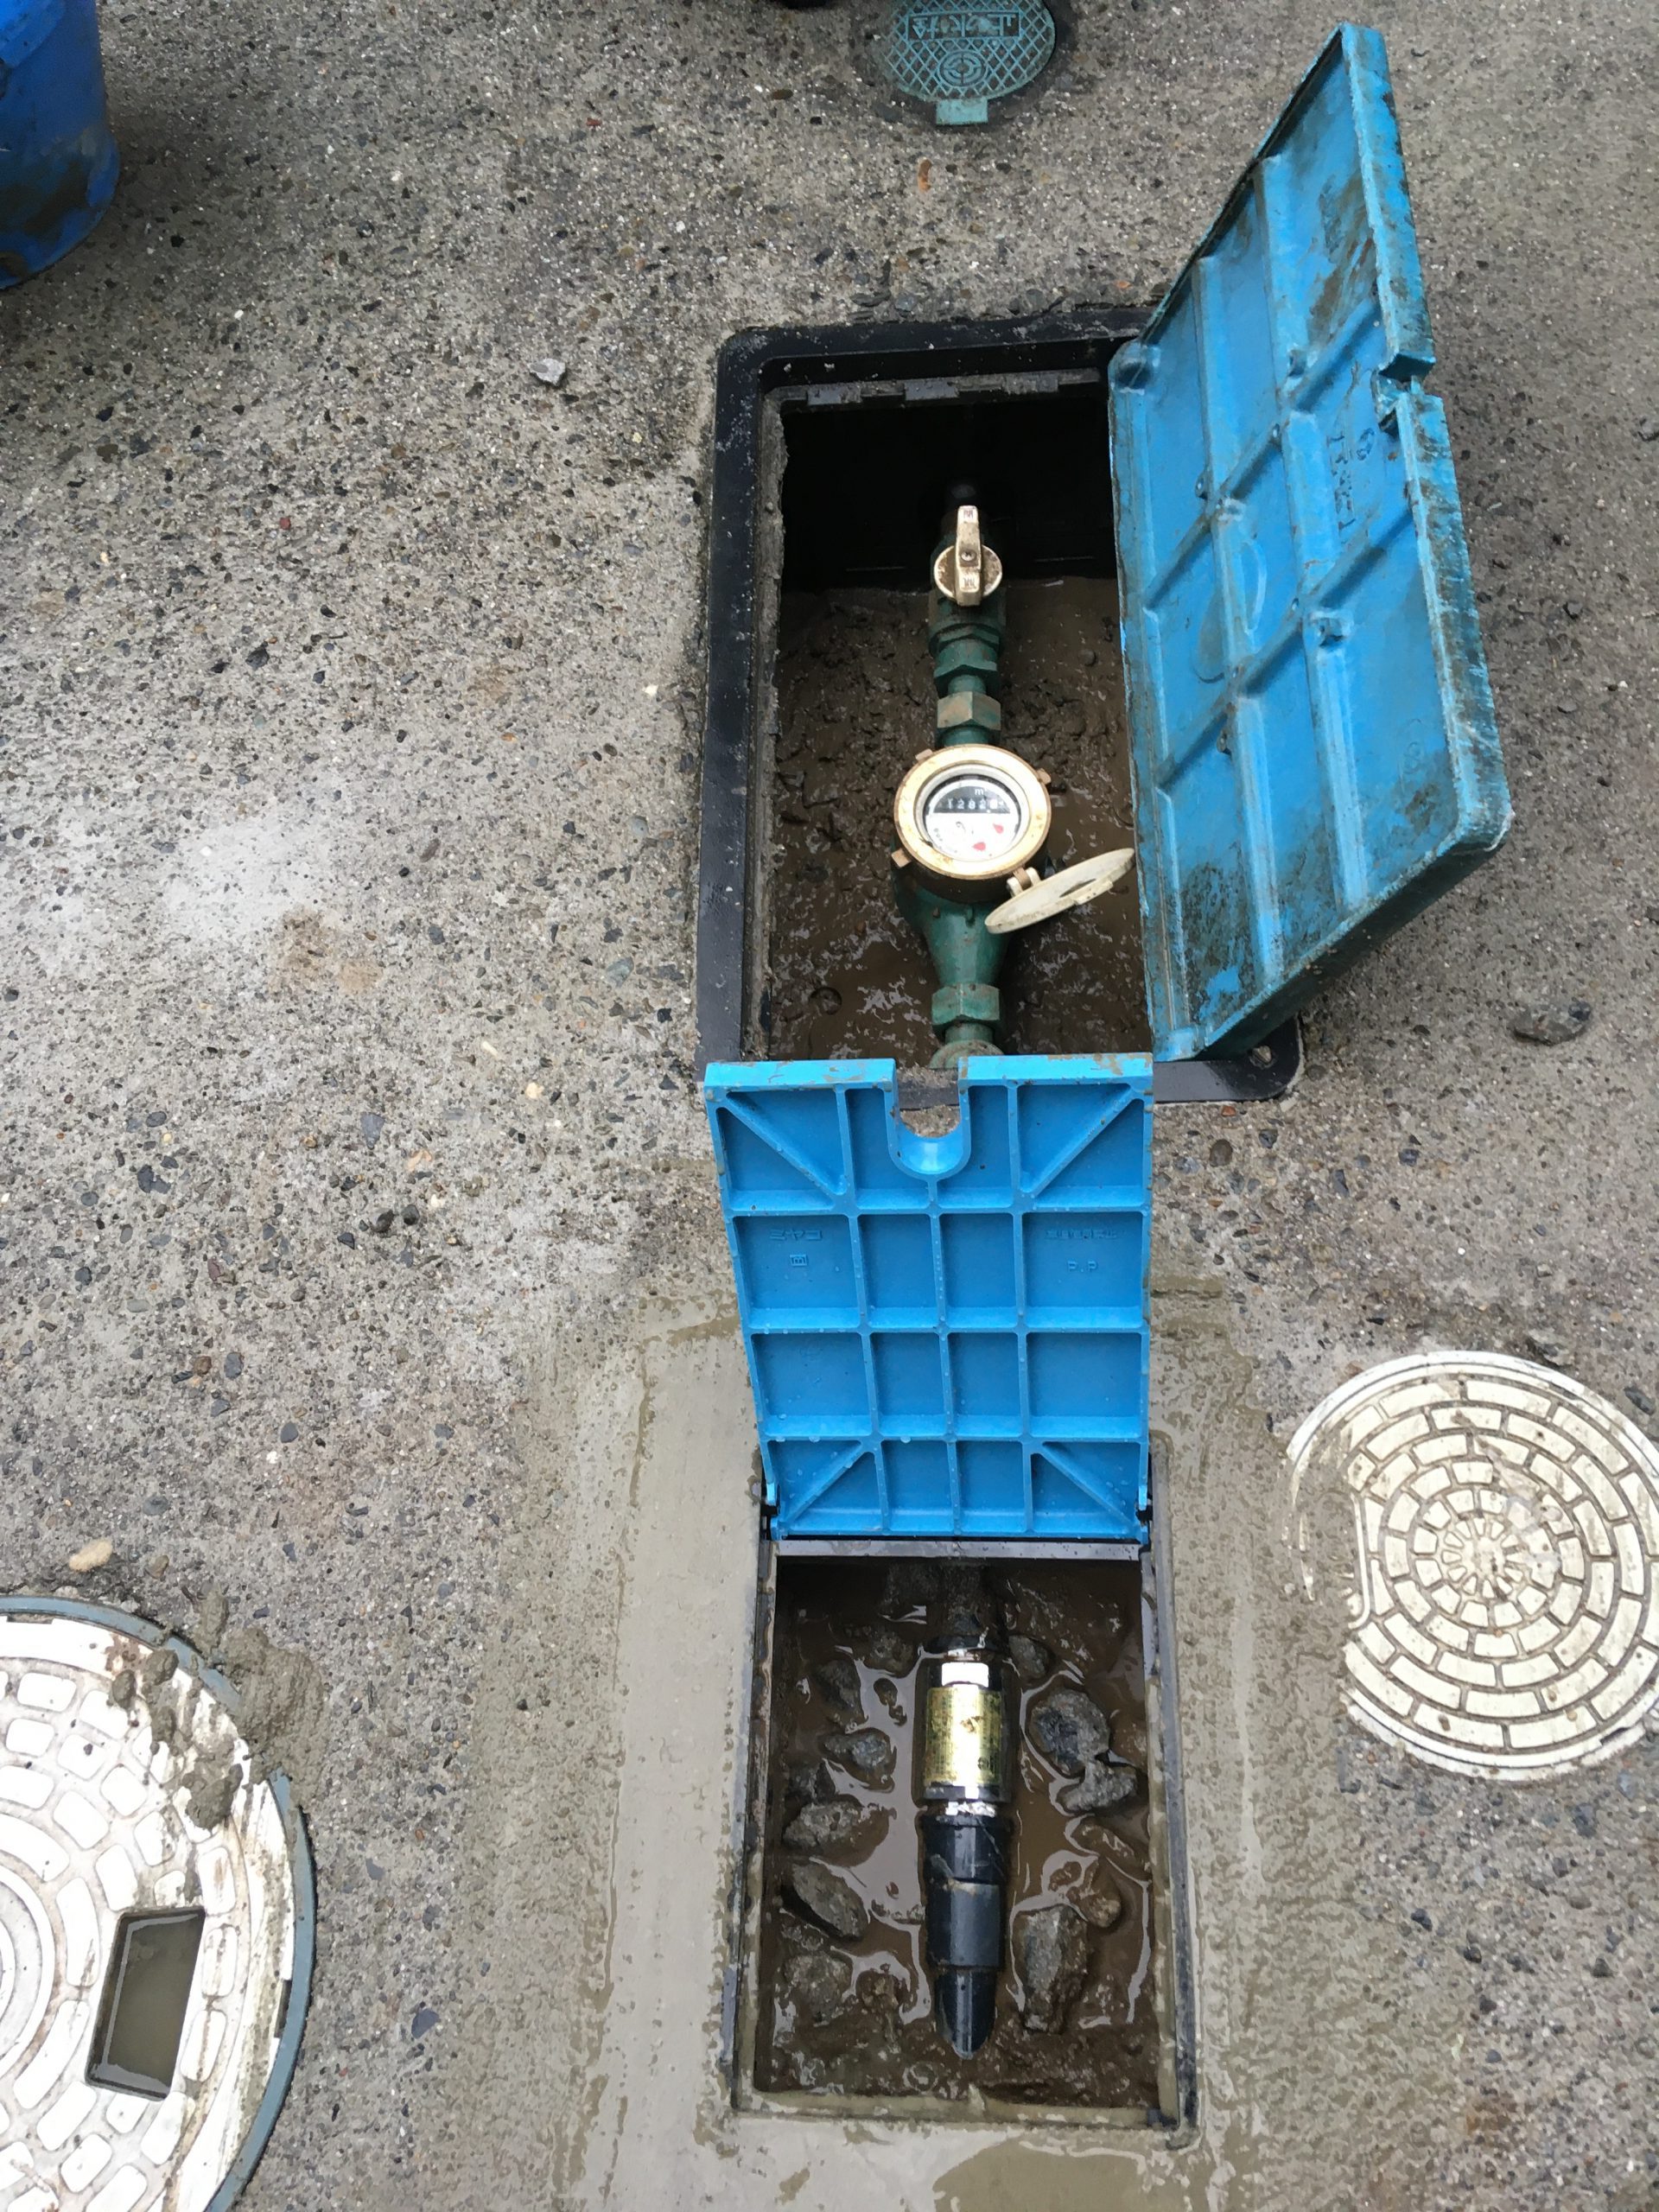 水道メーターとUFBDUALを設置した水道配管